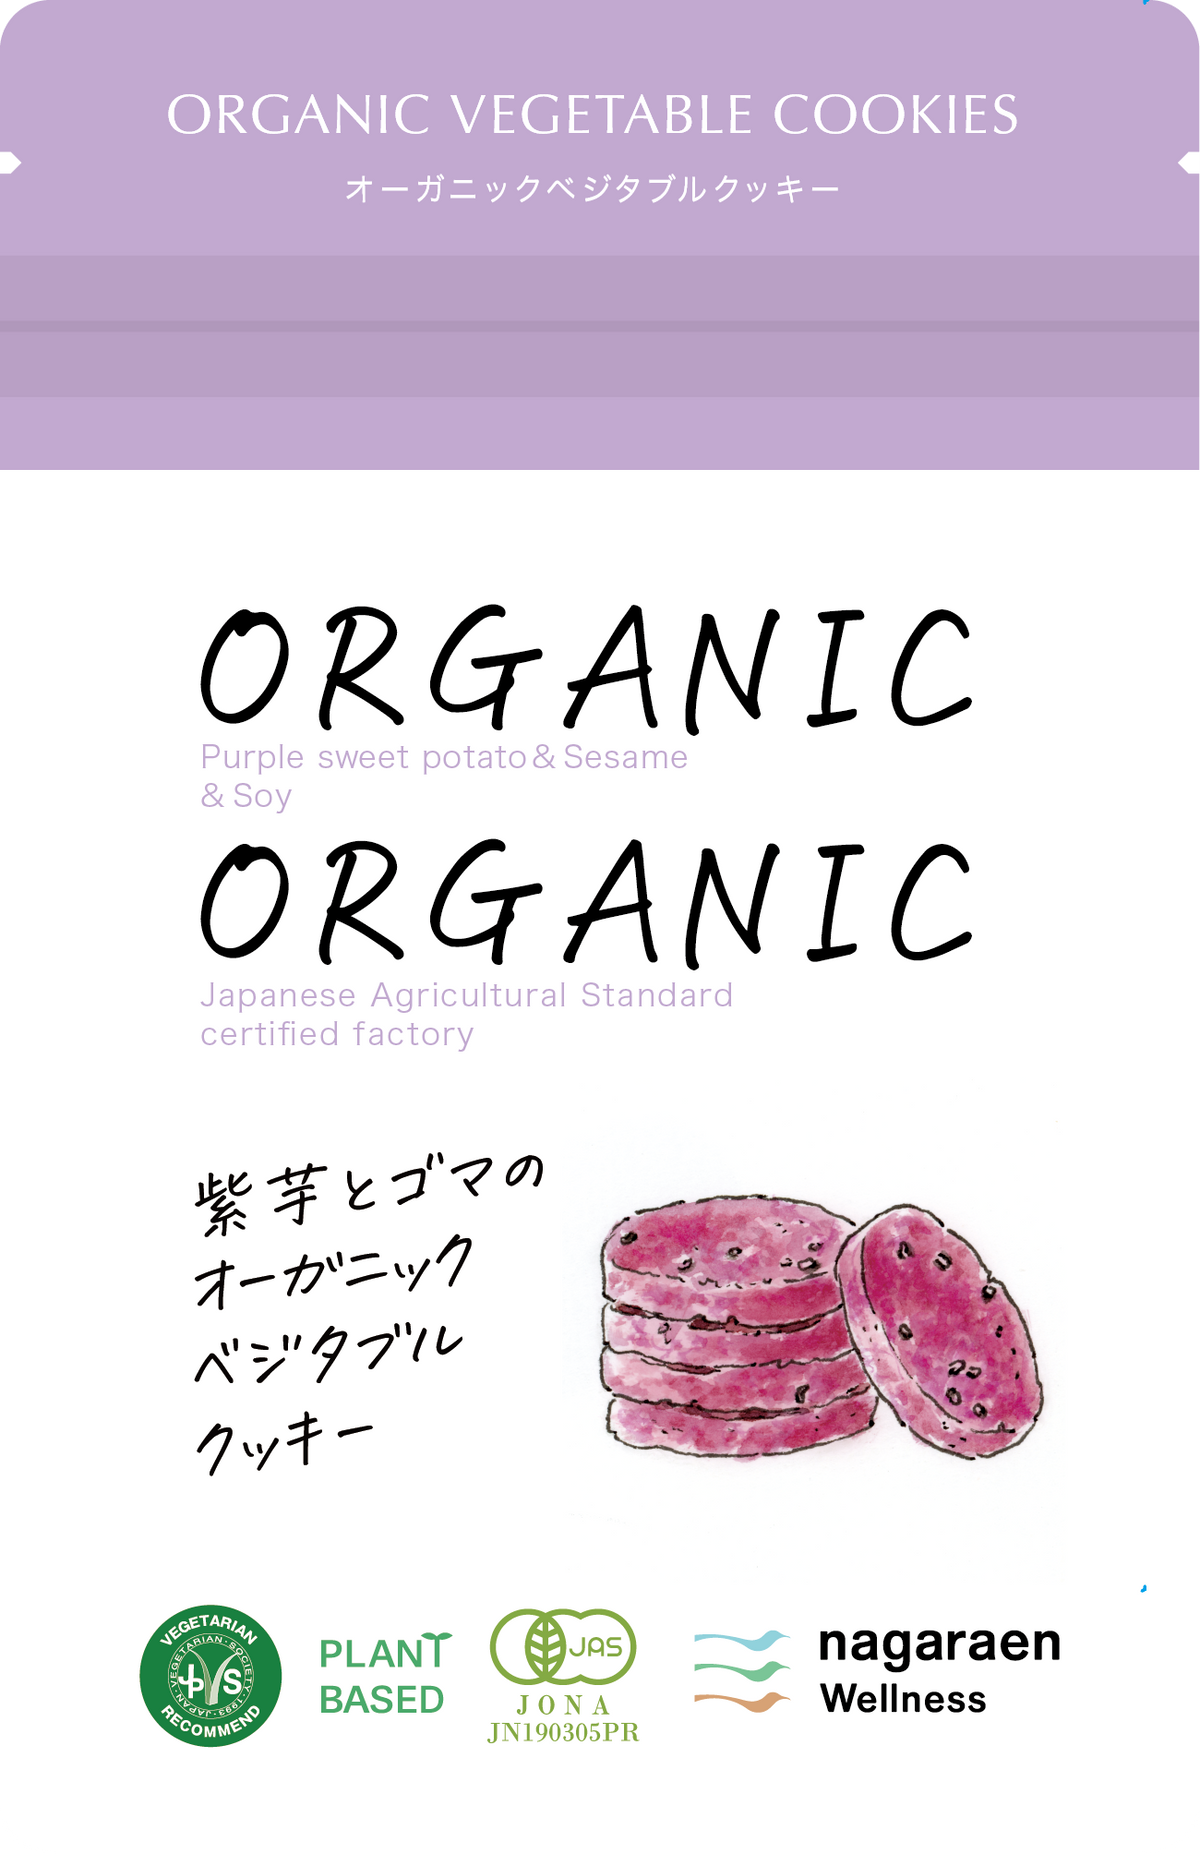 Purple sweet potato and sesame organic cookies